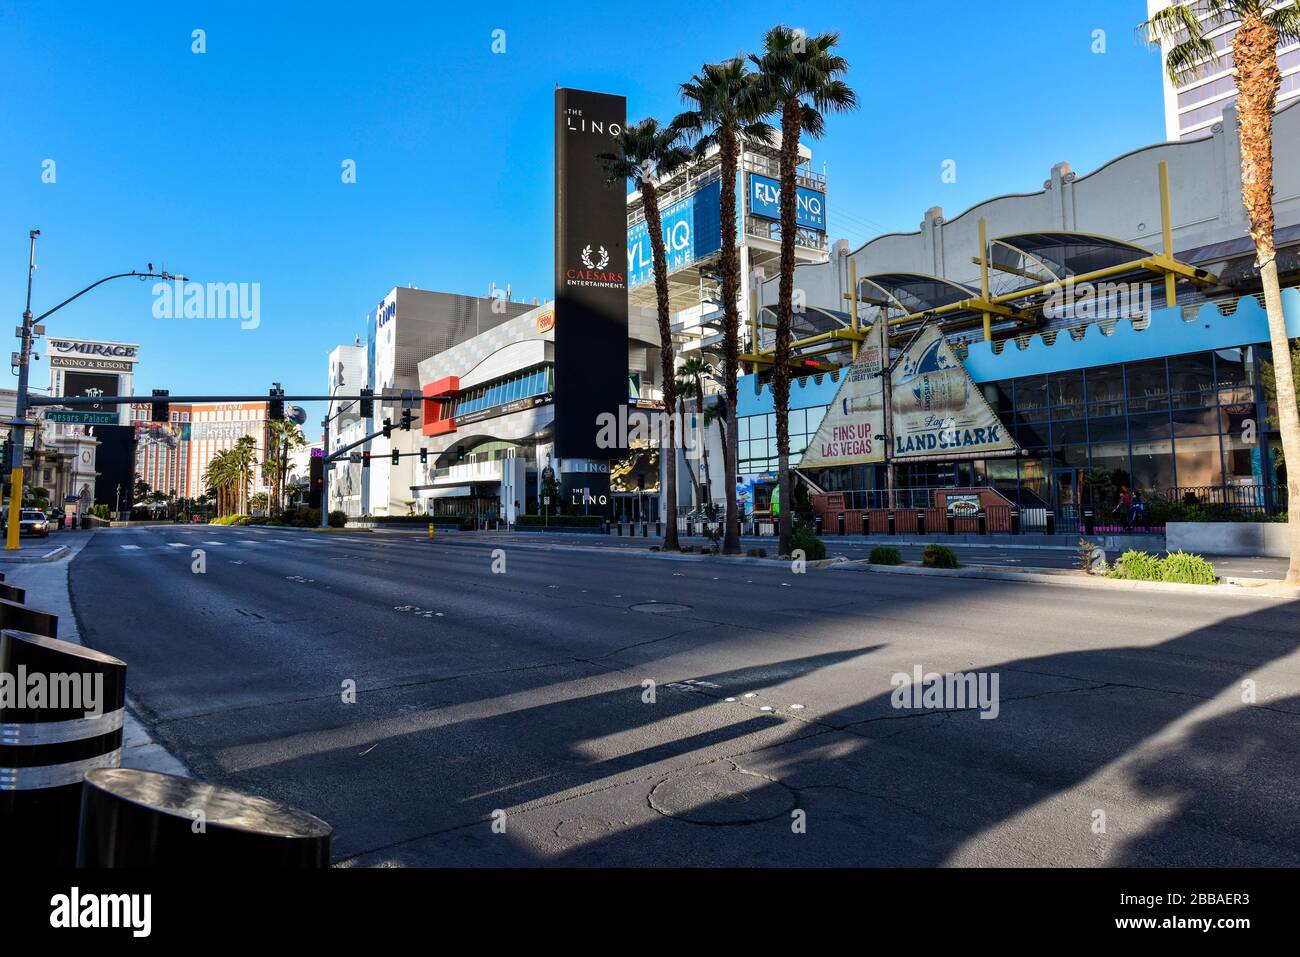 Las Vegas ist wegen Coronavirus geschlossen, der Strip ist ziemlich leer. Keine Menschen auf den Straßen und alles ist geschlossen. Stockfoto